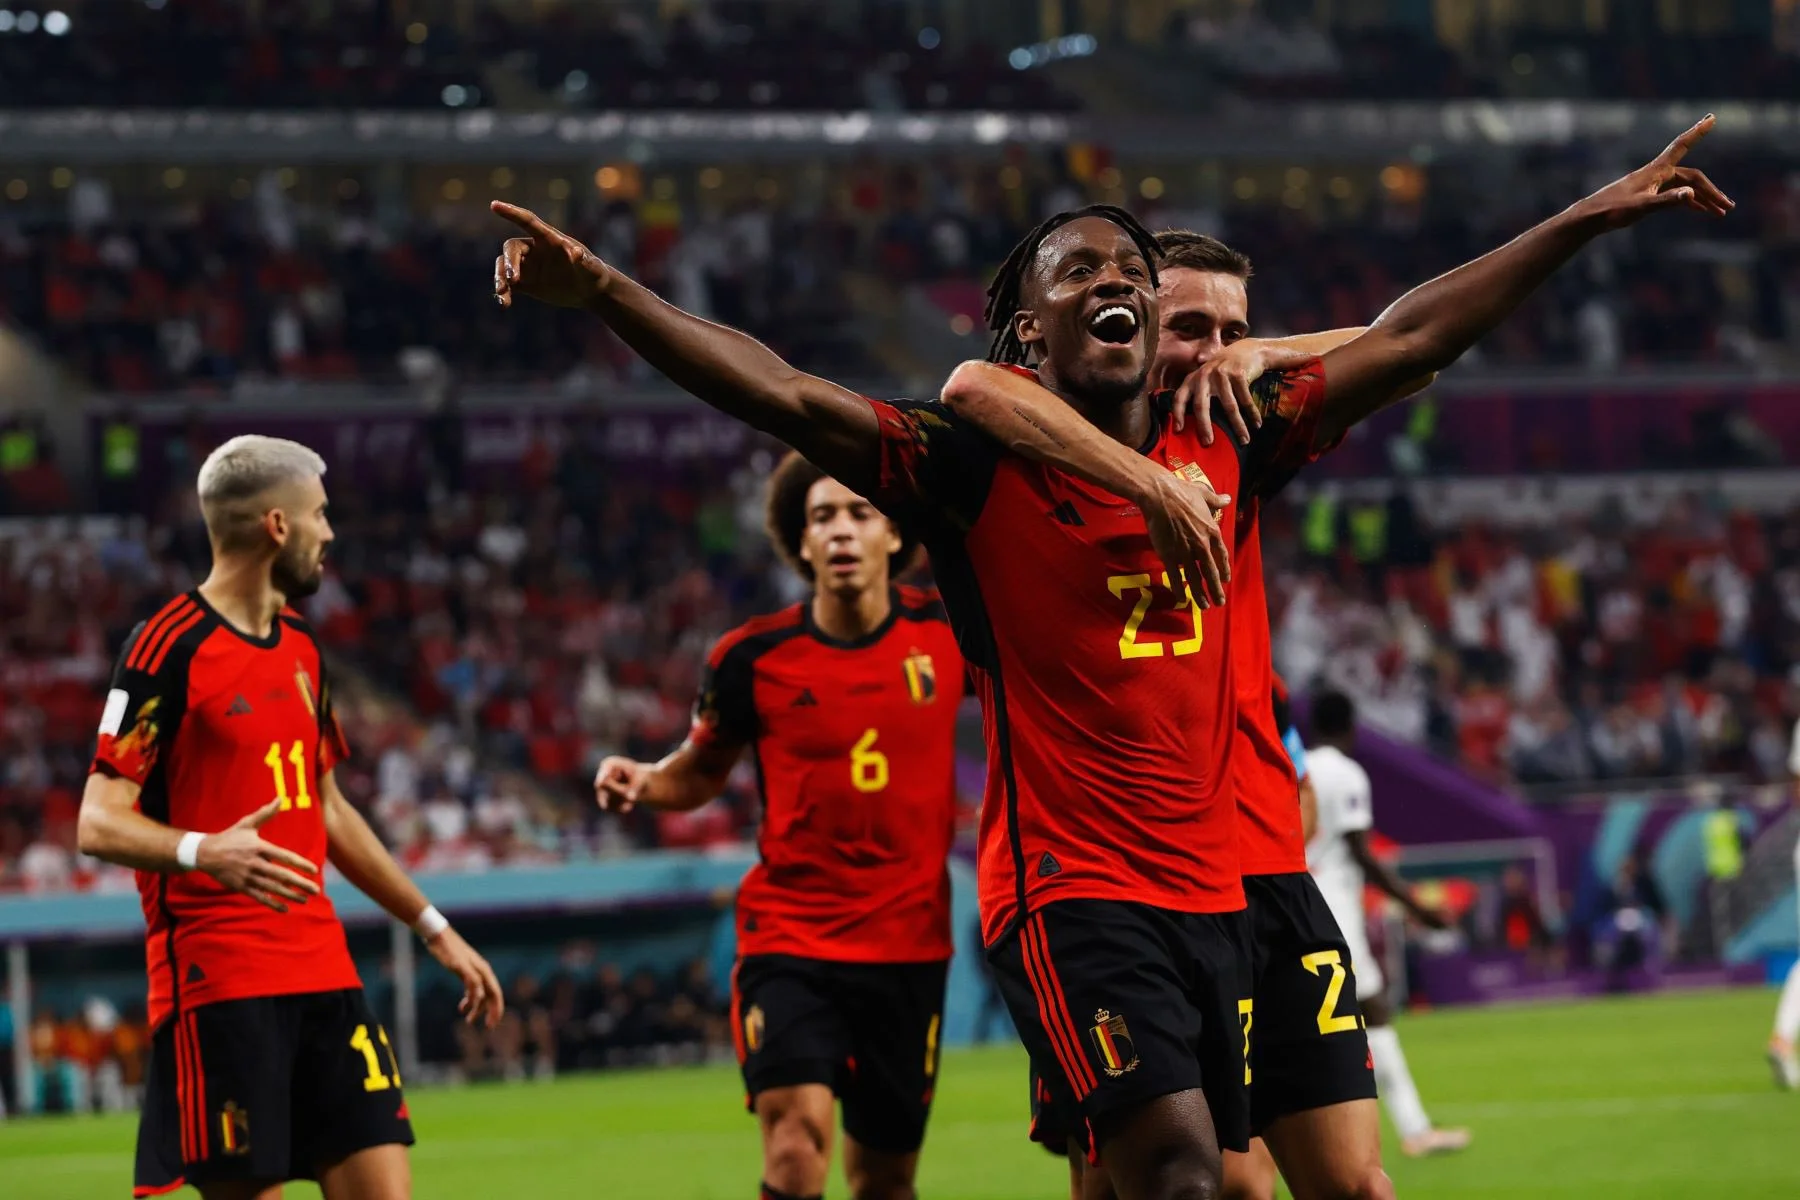 Bélgica derrota por la mínima a una aguerrida Canadá 